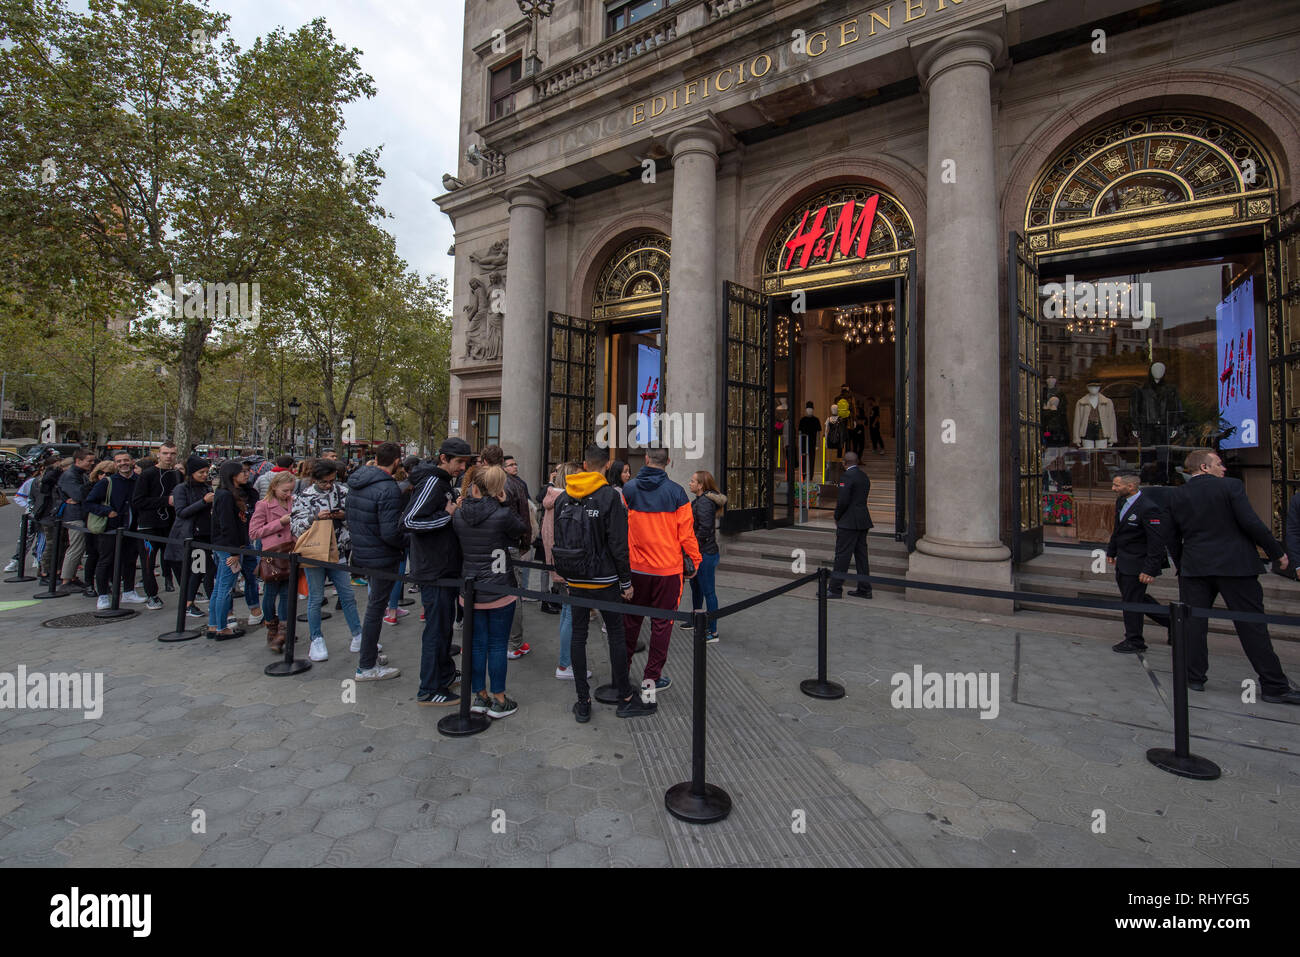 Barcelone, Espagne - les acheteurs de personnes font la queue en attendant  une ligne H&M magasin de vêtements d'ouvrir avec sa nouvelle collection de  vêtements Photo Stock - Alamy